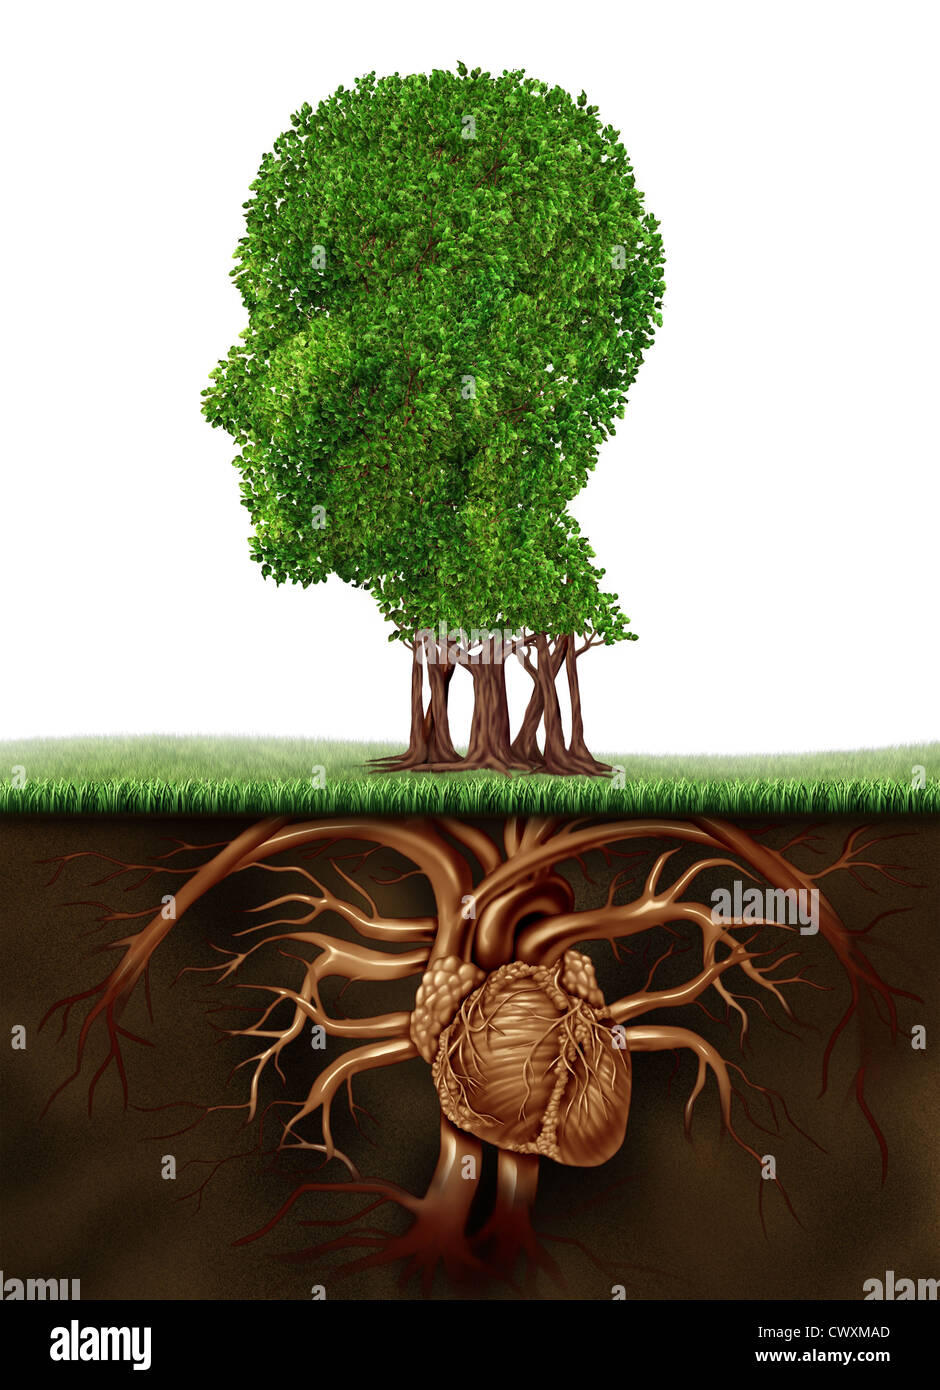 Organischen lebenden und gesunden Lifestyle-Konzept mit einem Baum in der Form eines menschlichen Kopfes und Wurzeln in Form von einem anatomischen Herz Organ repräsentiert eine vegetarisch leben, Essen Obst und Gemüse für eine wachsende Zahl. Stockfoto